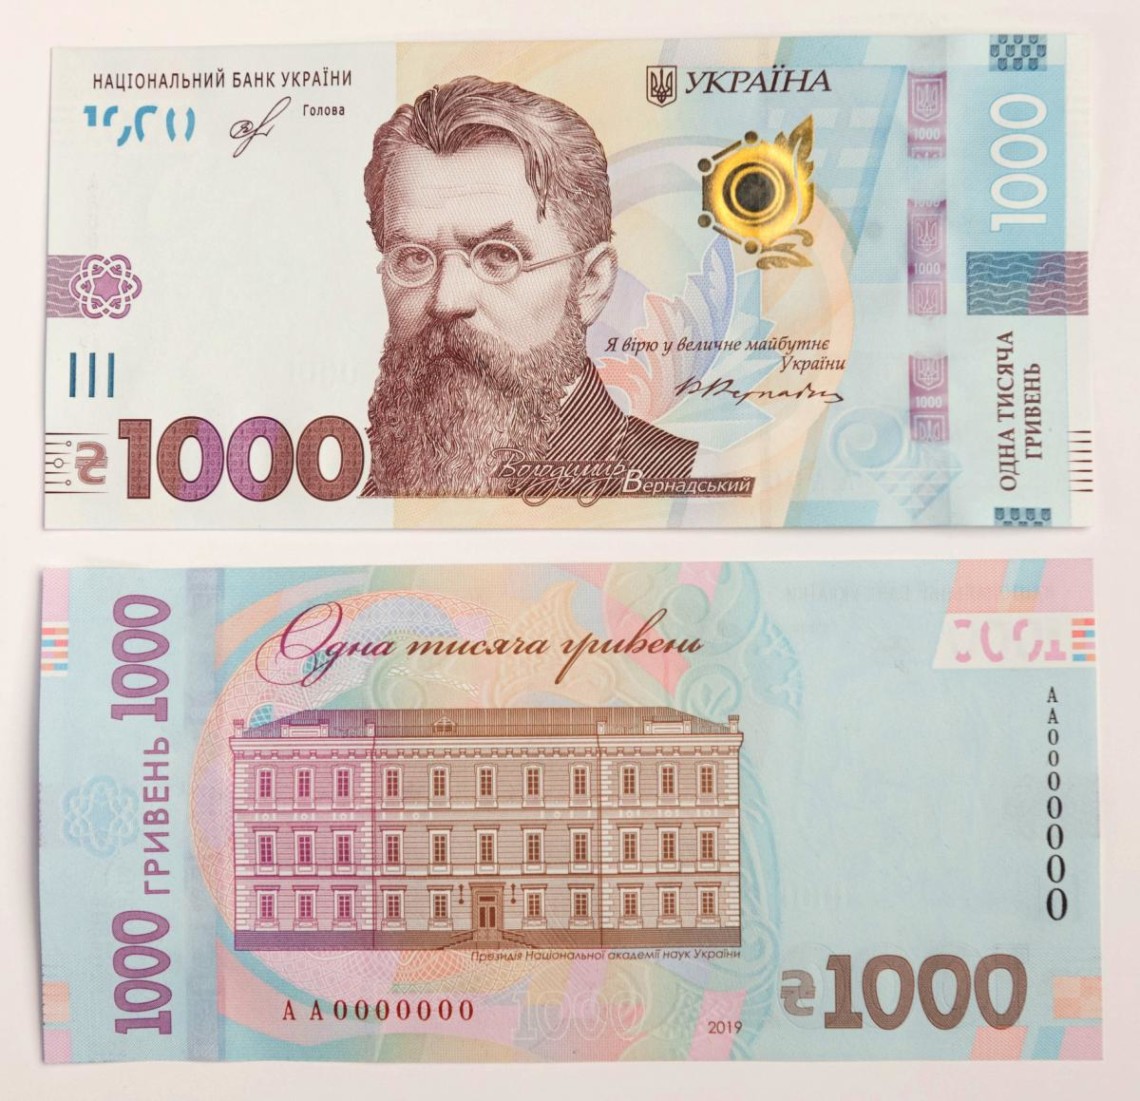 Национальный банк Украины с 25 октября вводит в обращение новую банкноту номиналом 1 тысяча гривен.